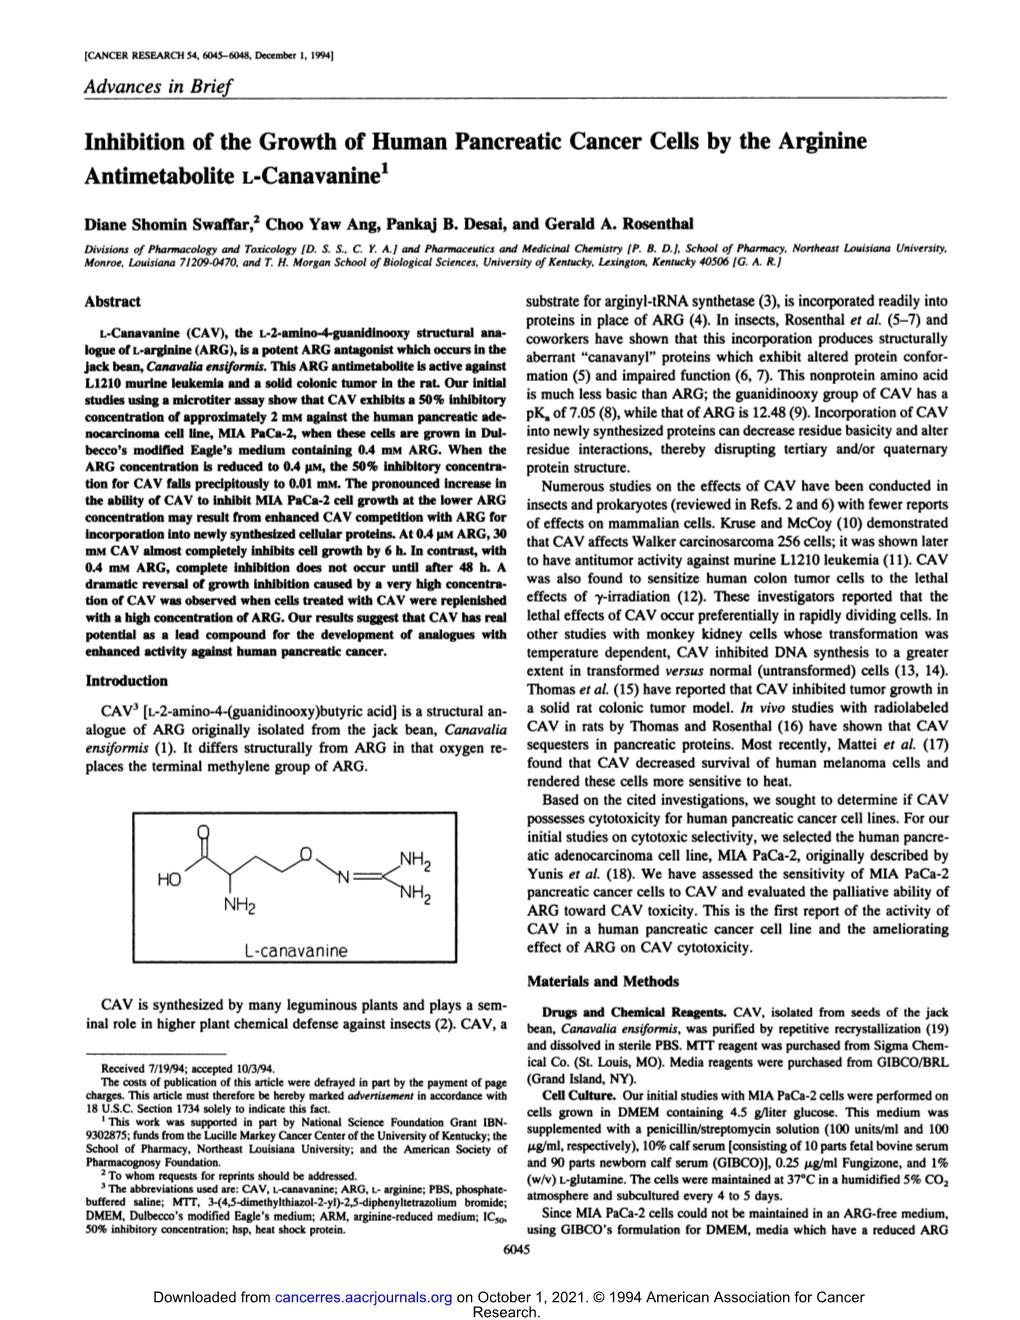 Antimetabolite L-Canavamne1